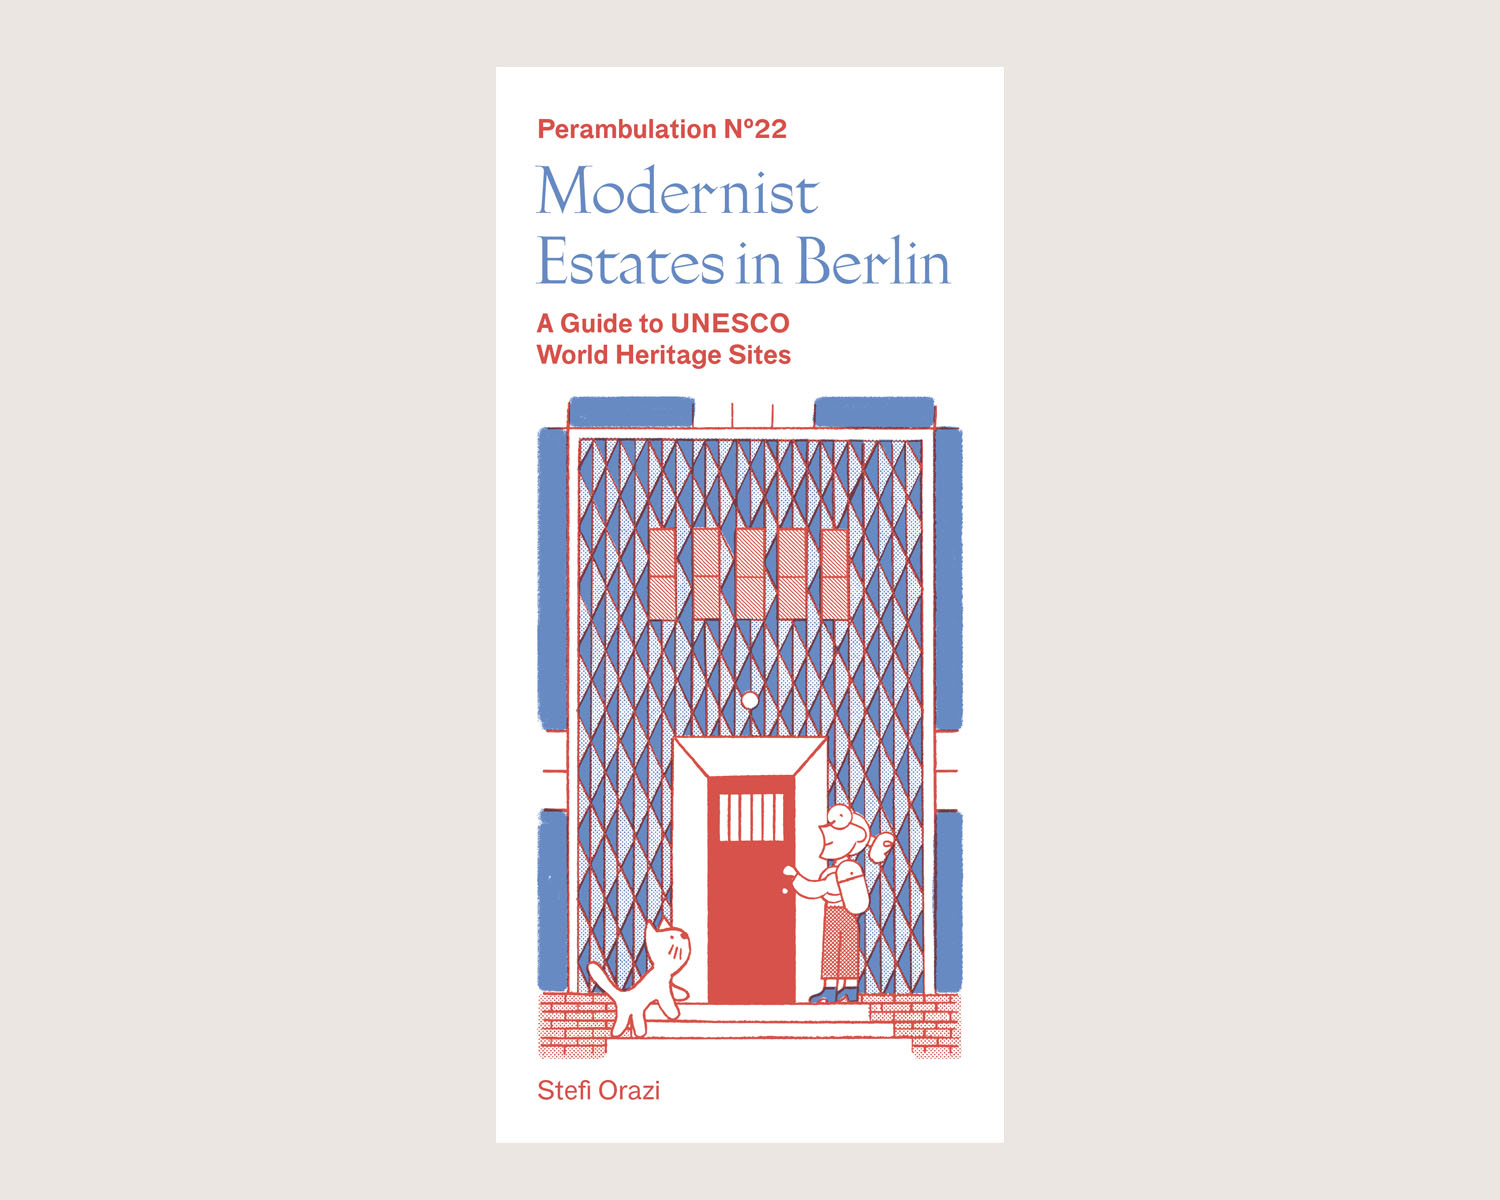 Perambulation Nº22—Modernist Estates in Berlin by Stefi Orazi